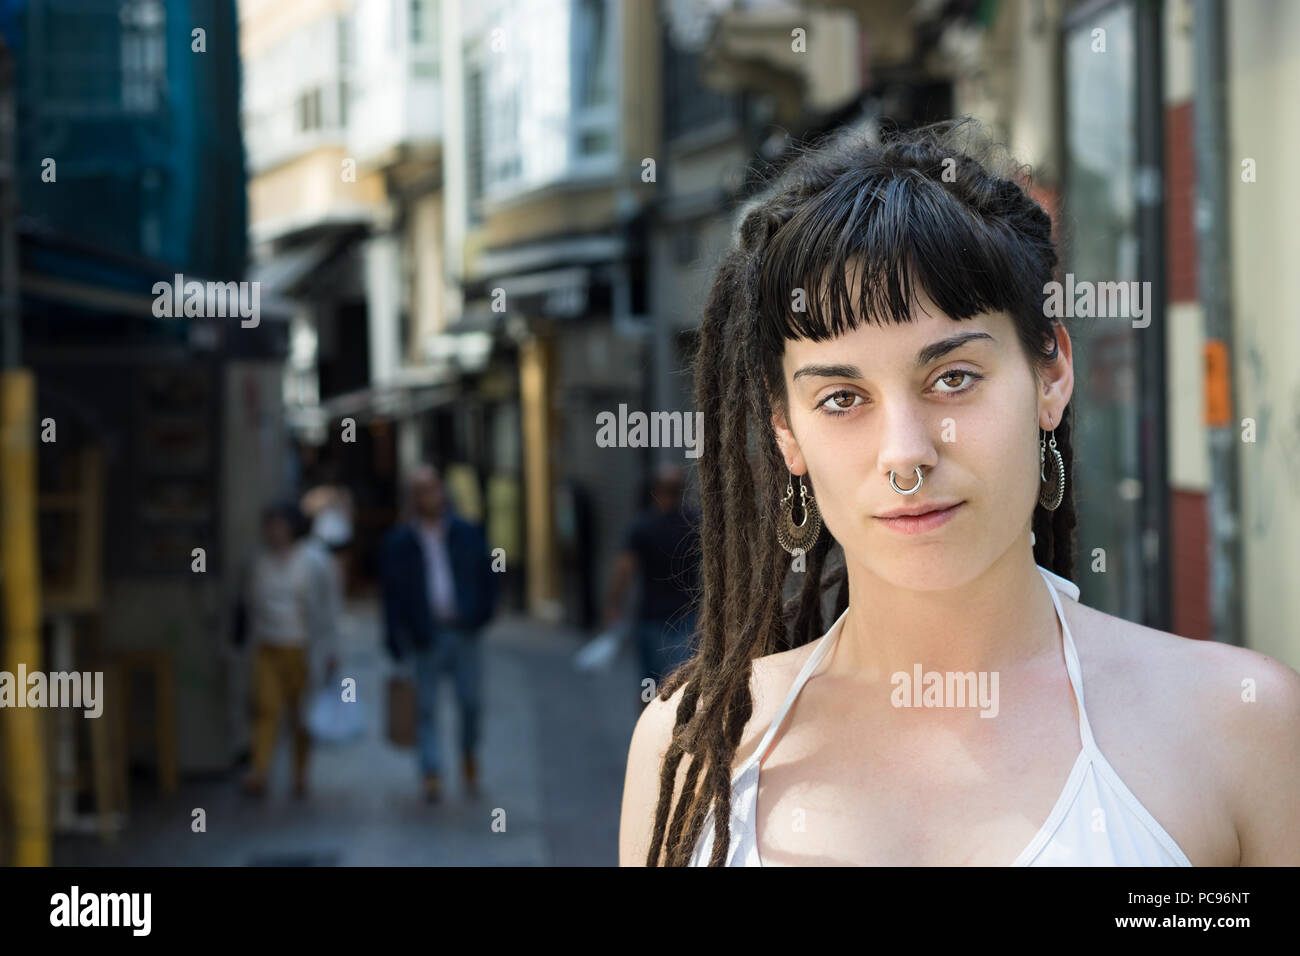 La Corogne, Espagne - Juillet 13th, 2018 : Portrait d'une jeune femme dans  la rue avec look rasta, dreadlocks et un piercing dans le nez Photo Stock -  Alamy